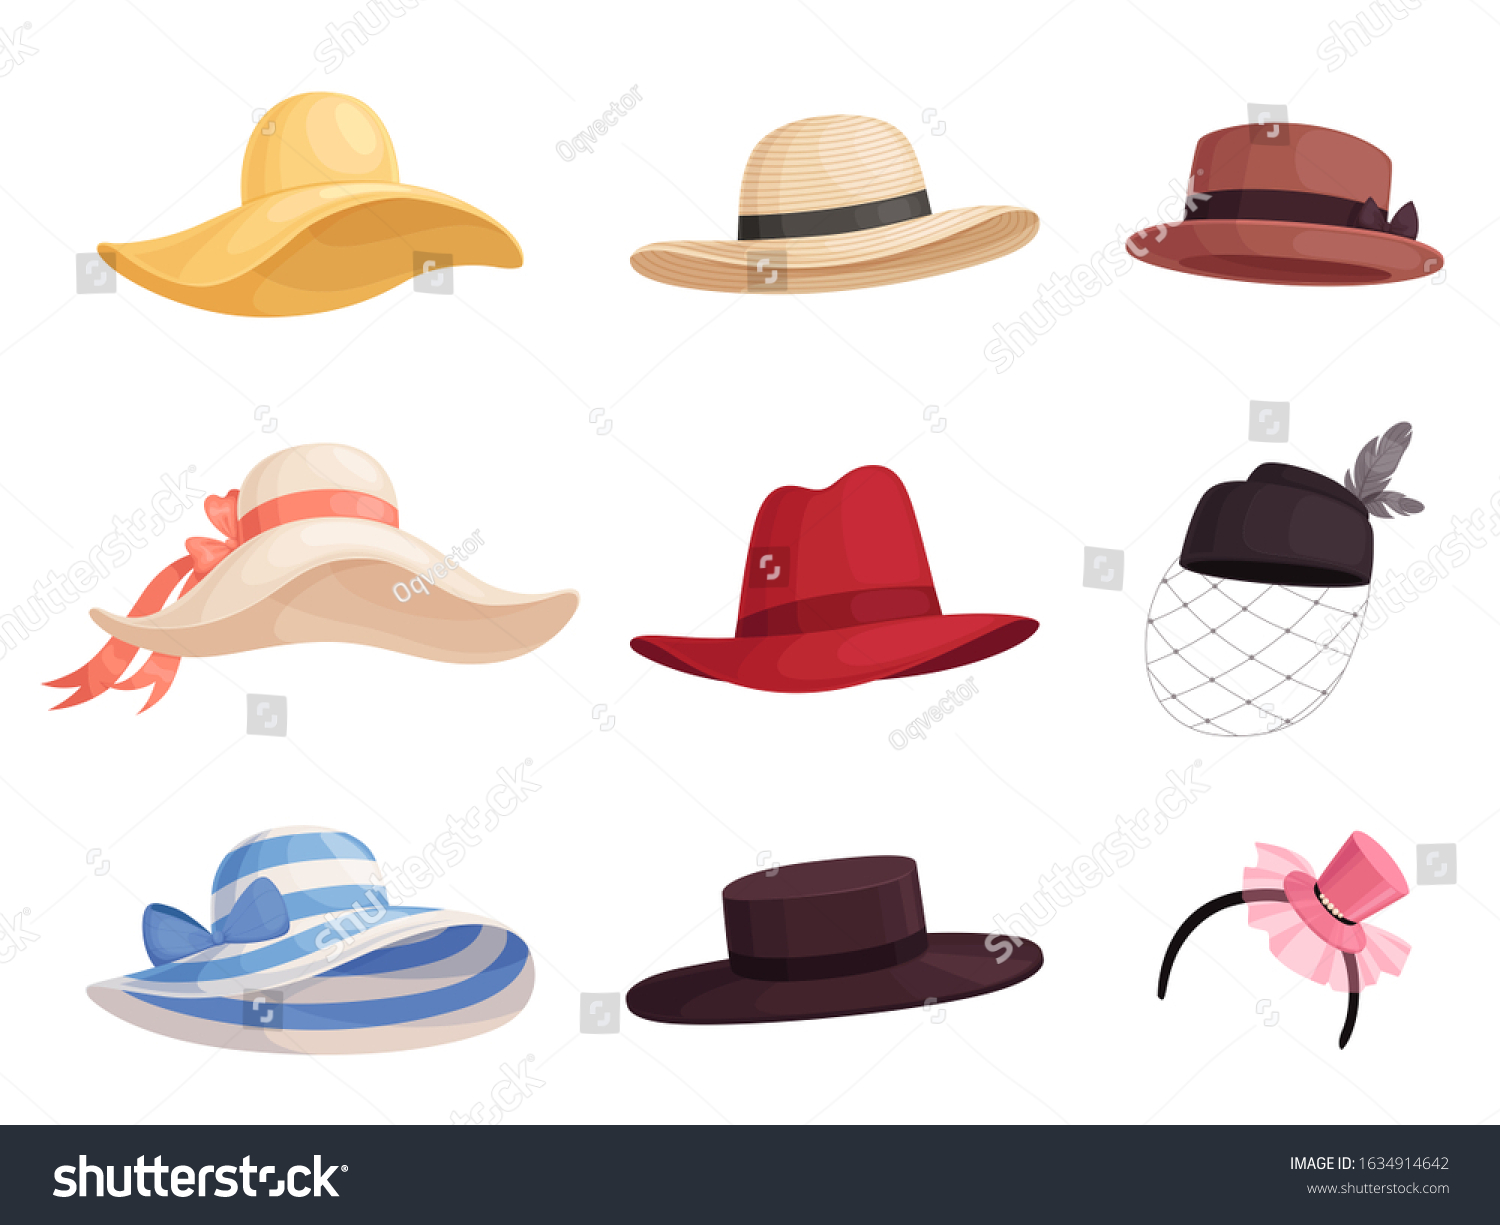 Girl-in-hat Images, Stock Photos & Vectors | Shutterstock